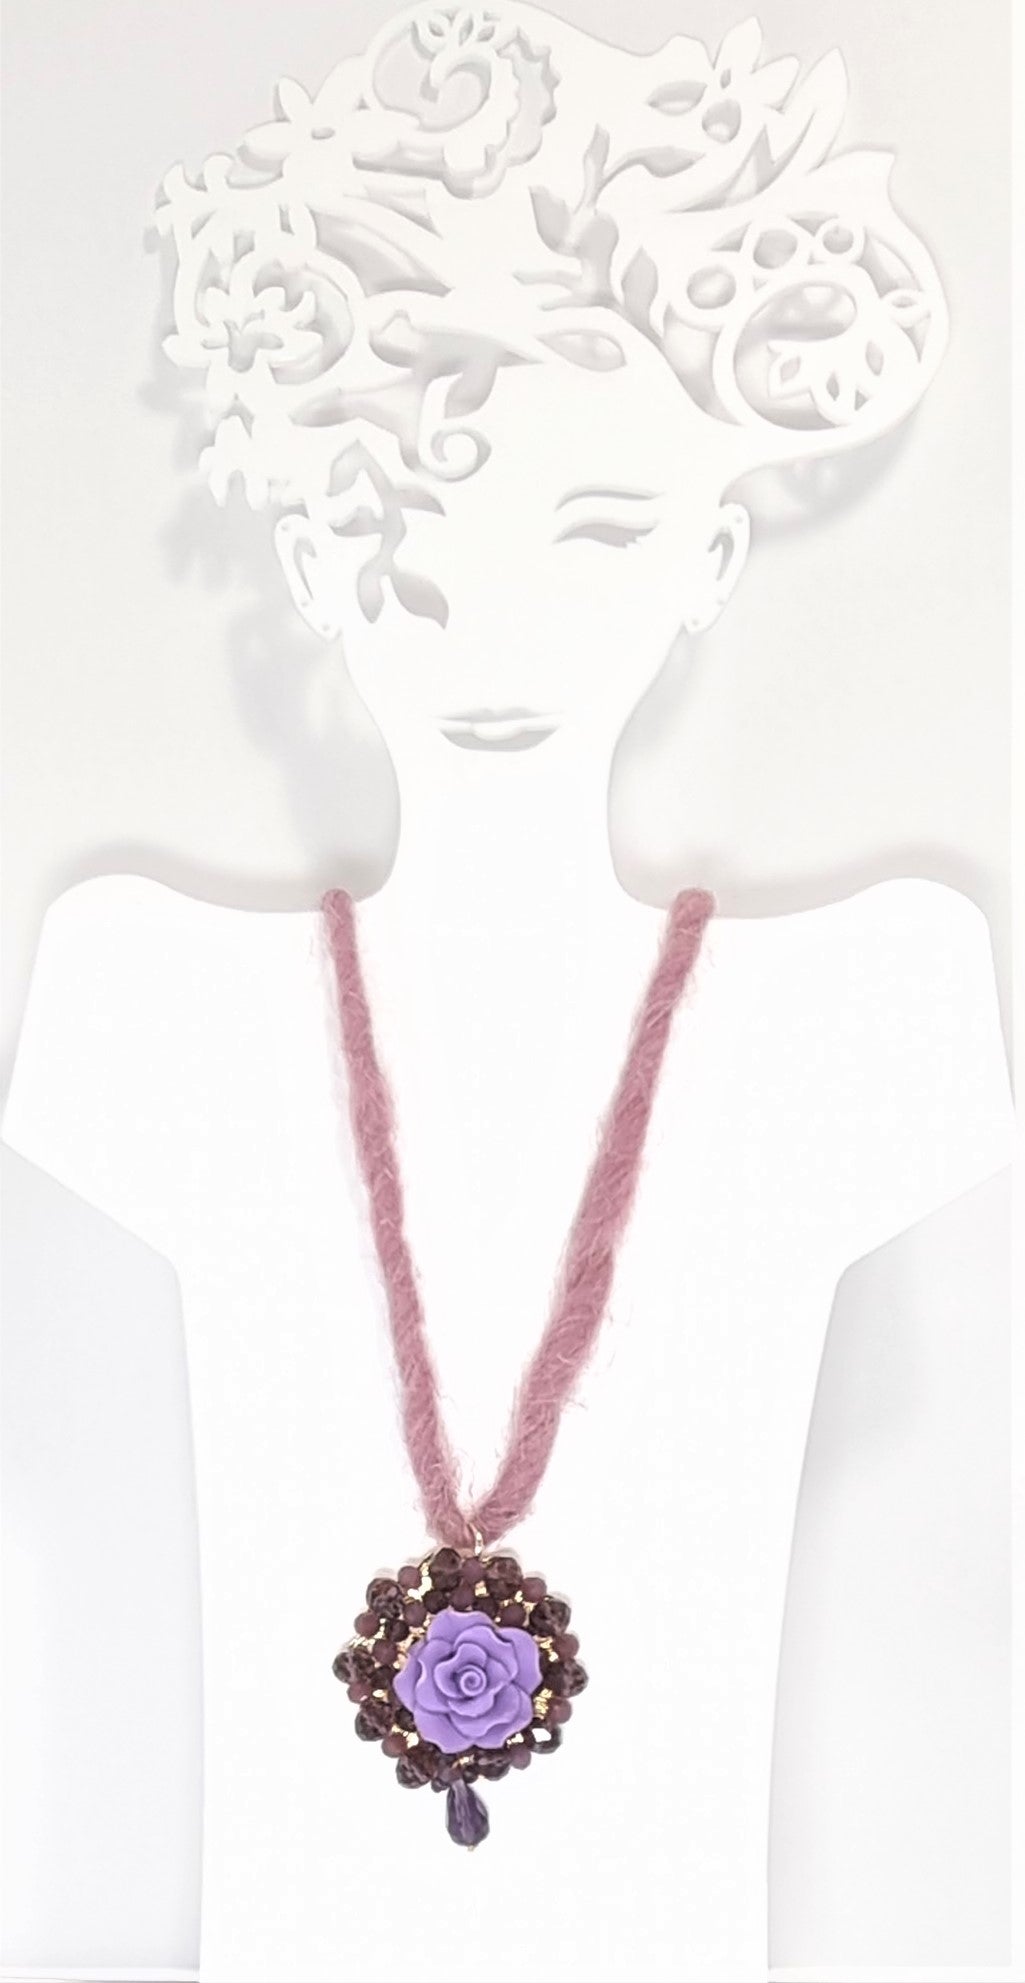 Collana LE ROSE .016 un filo morbido di lana rosa cipria, ciondolo resina fiore e cristalli.